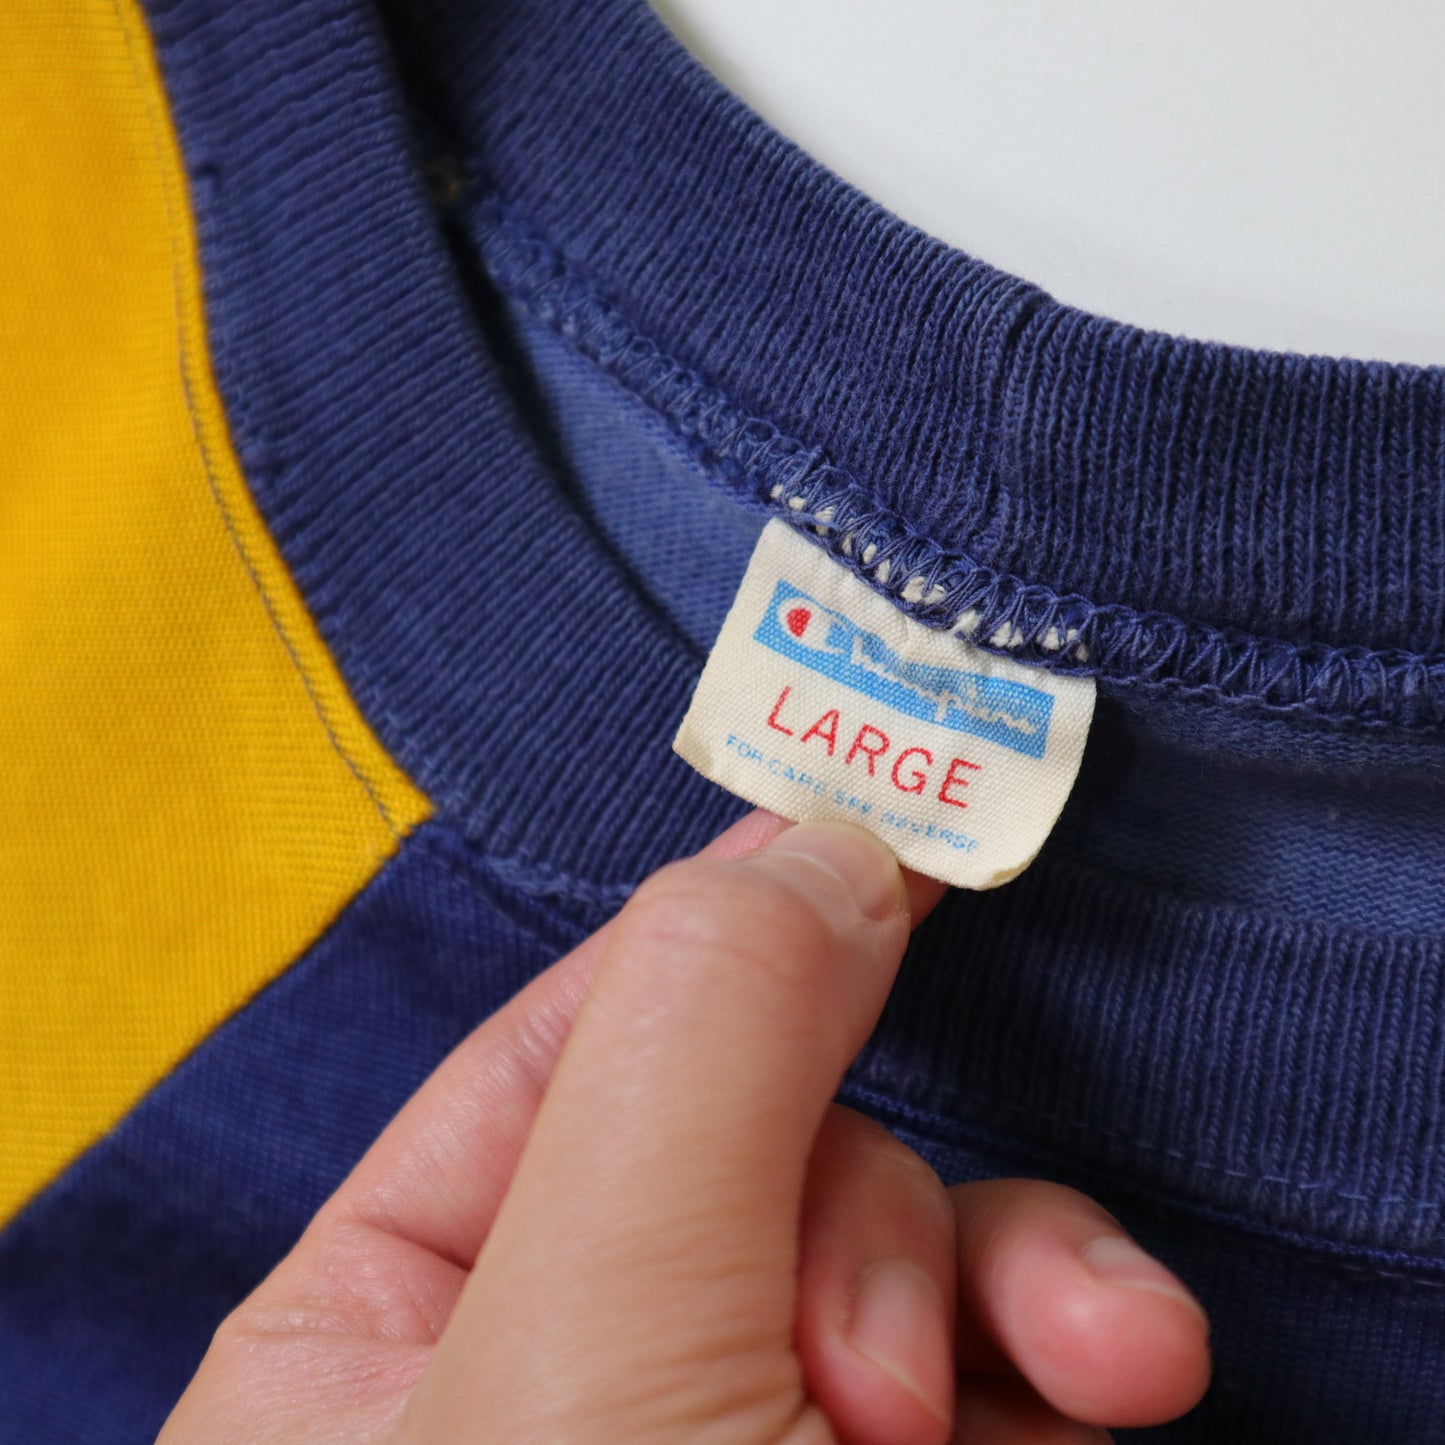 70s Champion 美國製 JESUIT 藍黃拼接美式足球上衣